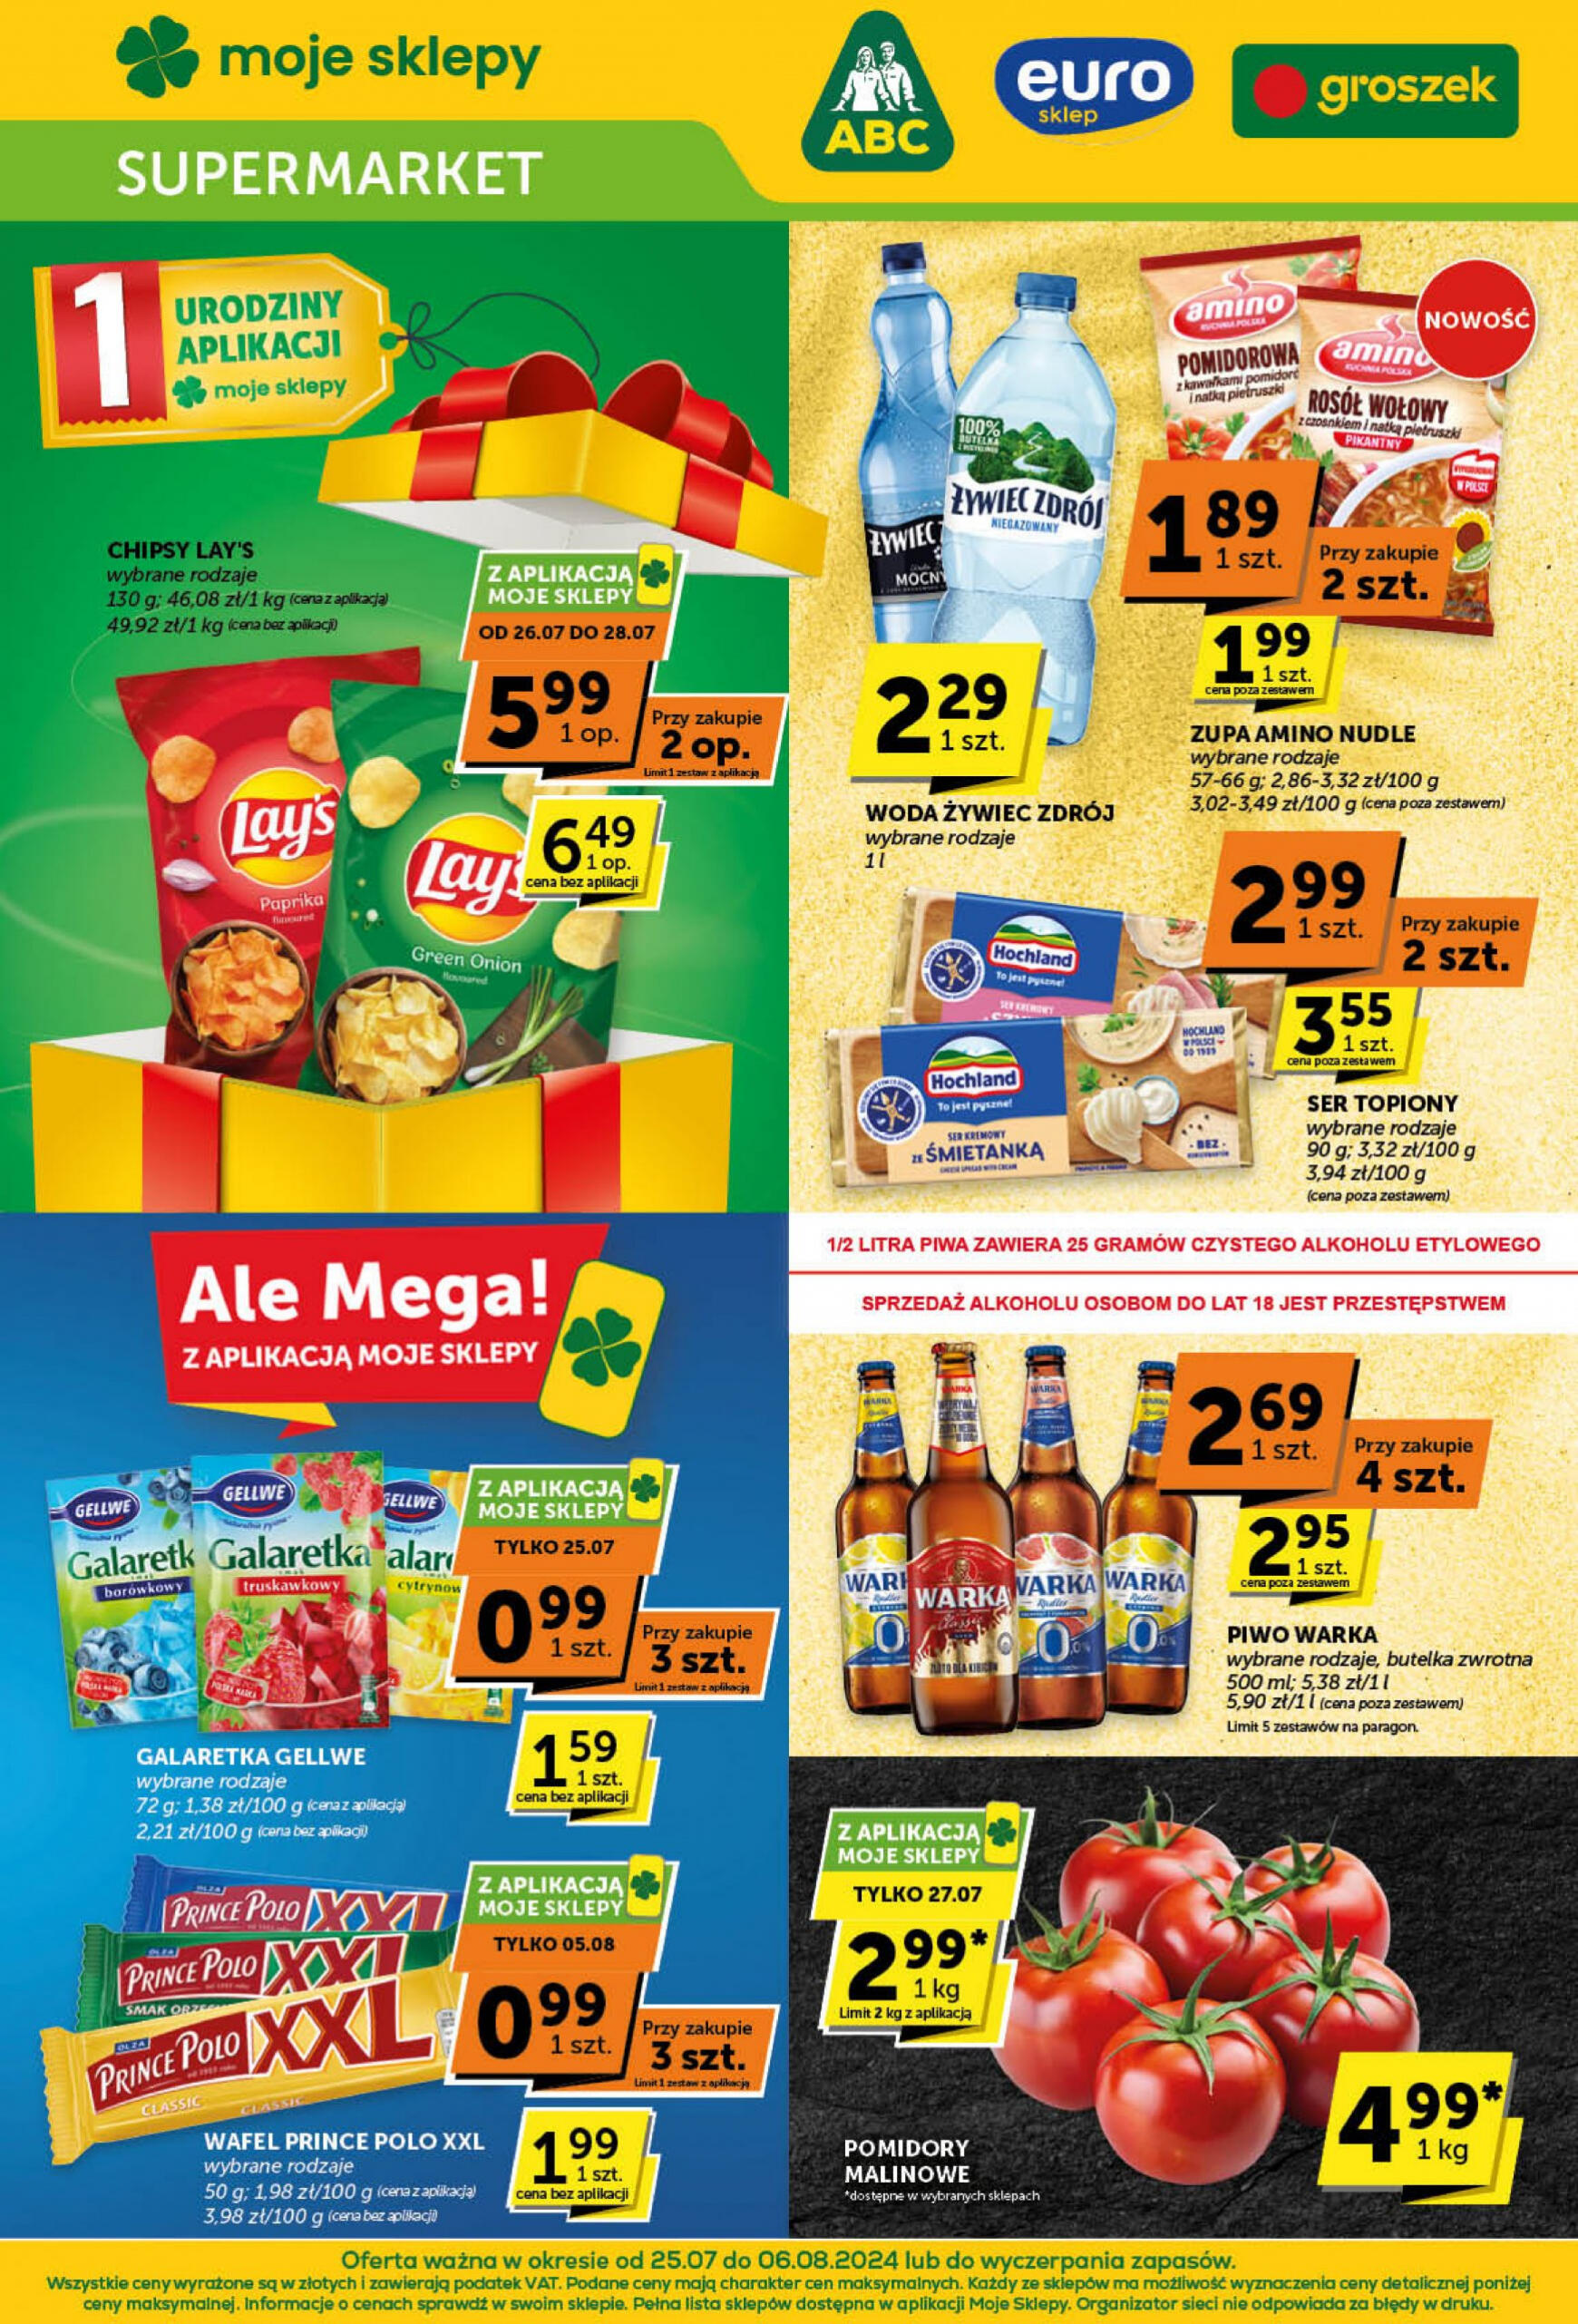 groszek - Groszek Supermarket gazetka aktualna ważna od 25.07. - 06.08.